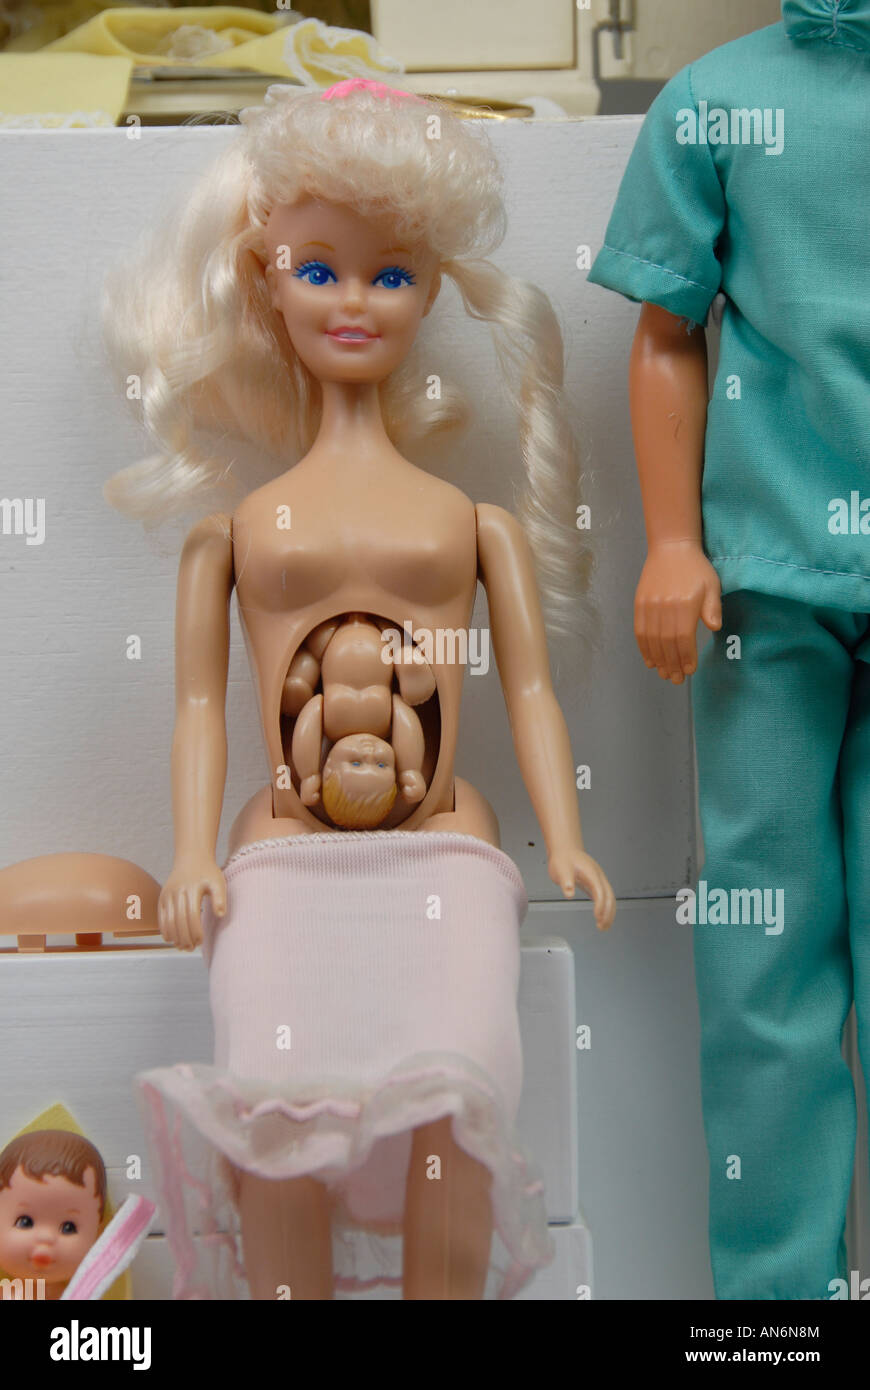 El debate por el feto de juguete que compite con las Barbies, ¿Antiderechos en las jugueterías?, Página